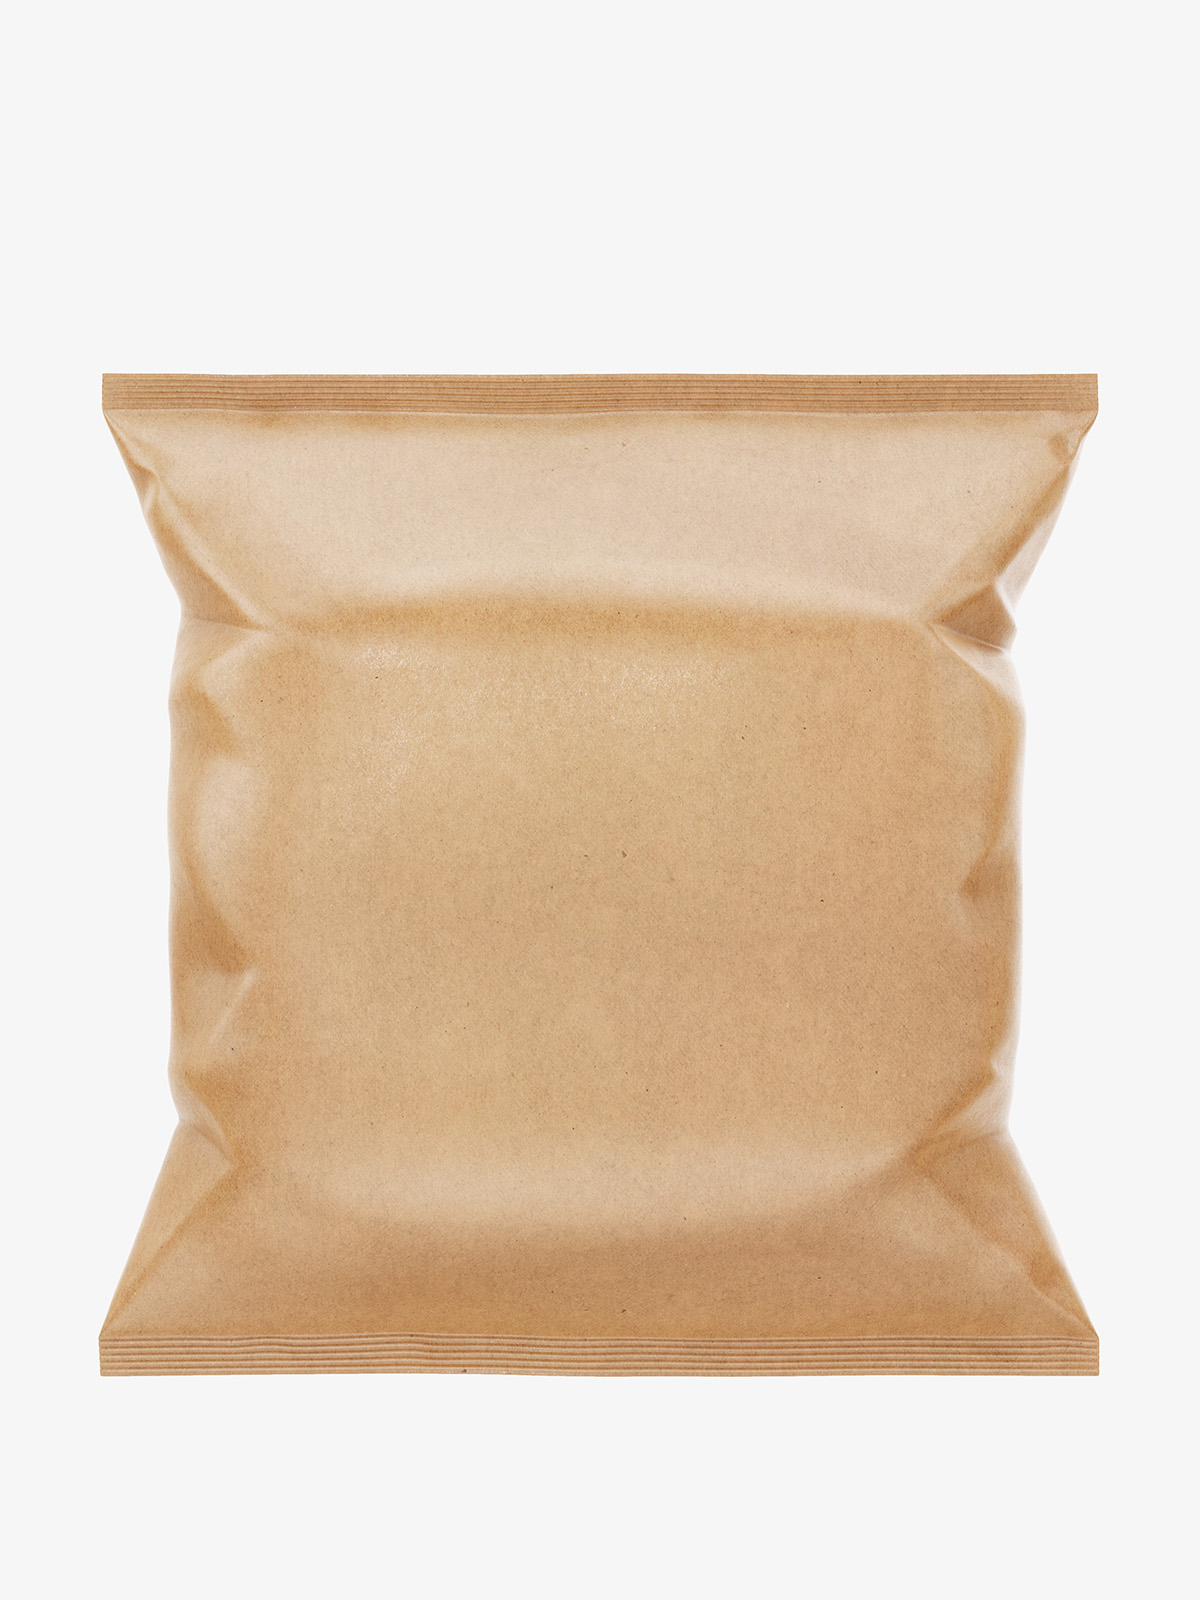 Download Kraft paper food bag mockup - Smarty Mockups